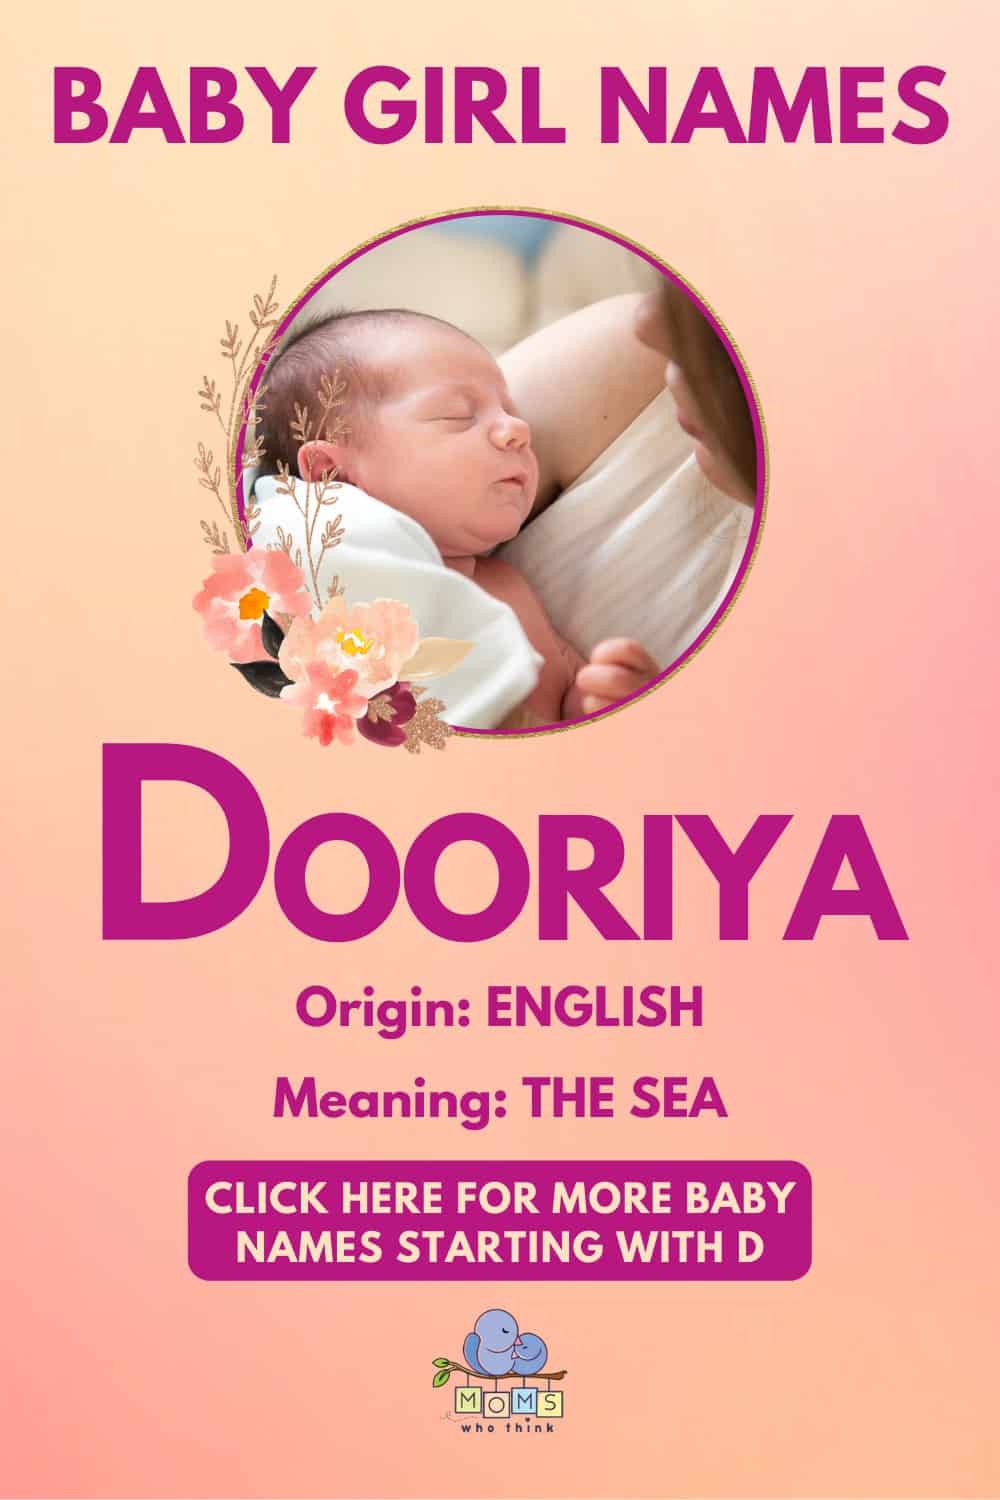 Baby girl name meanings - Dooriya